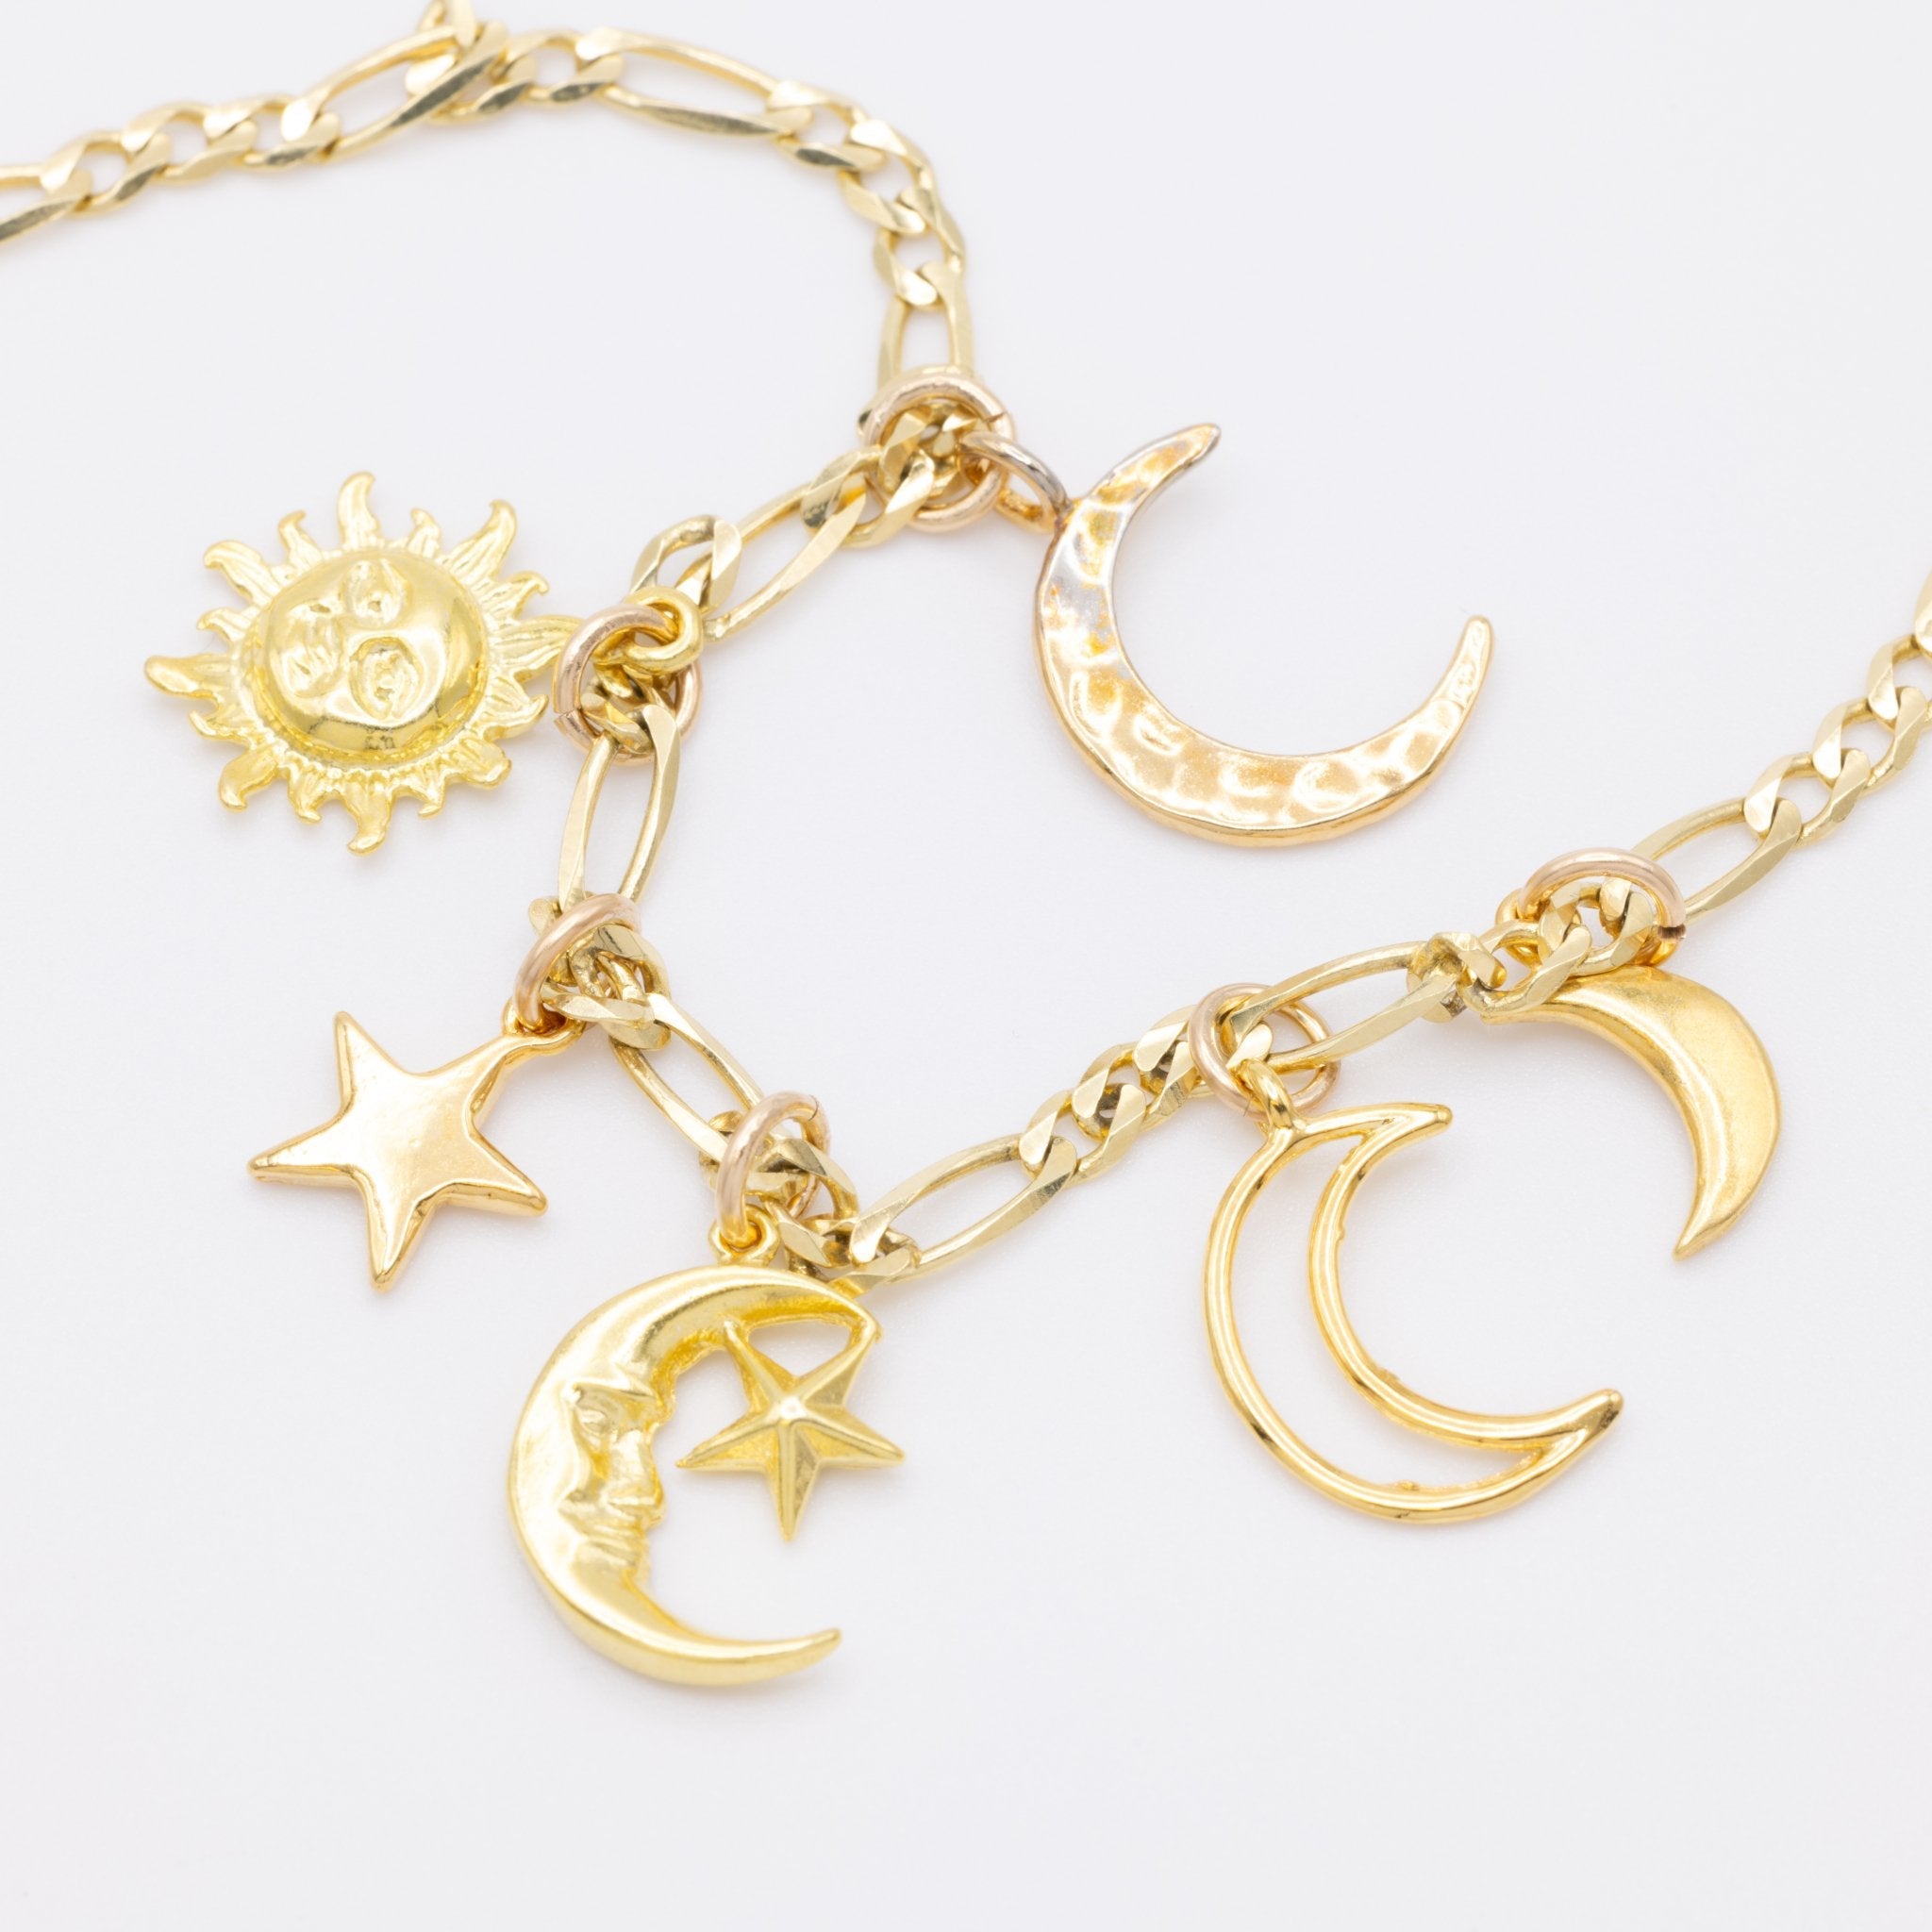 Star Charm 14K Gold - GoldandWillow